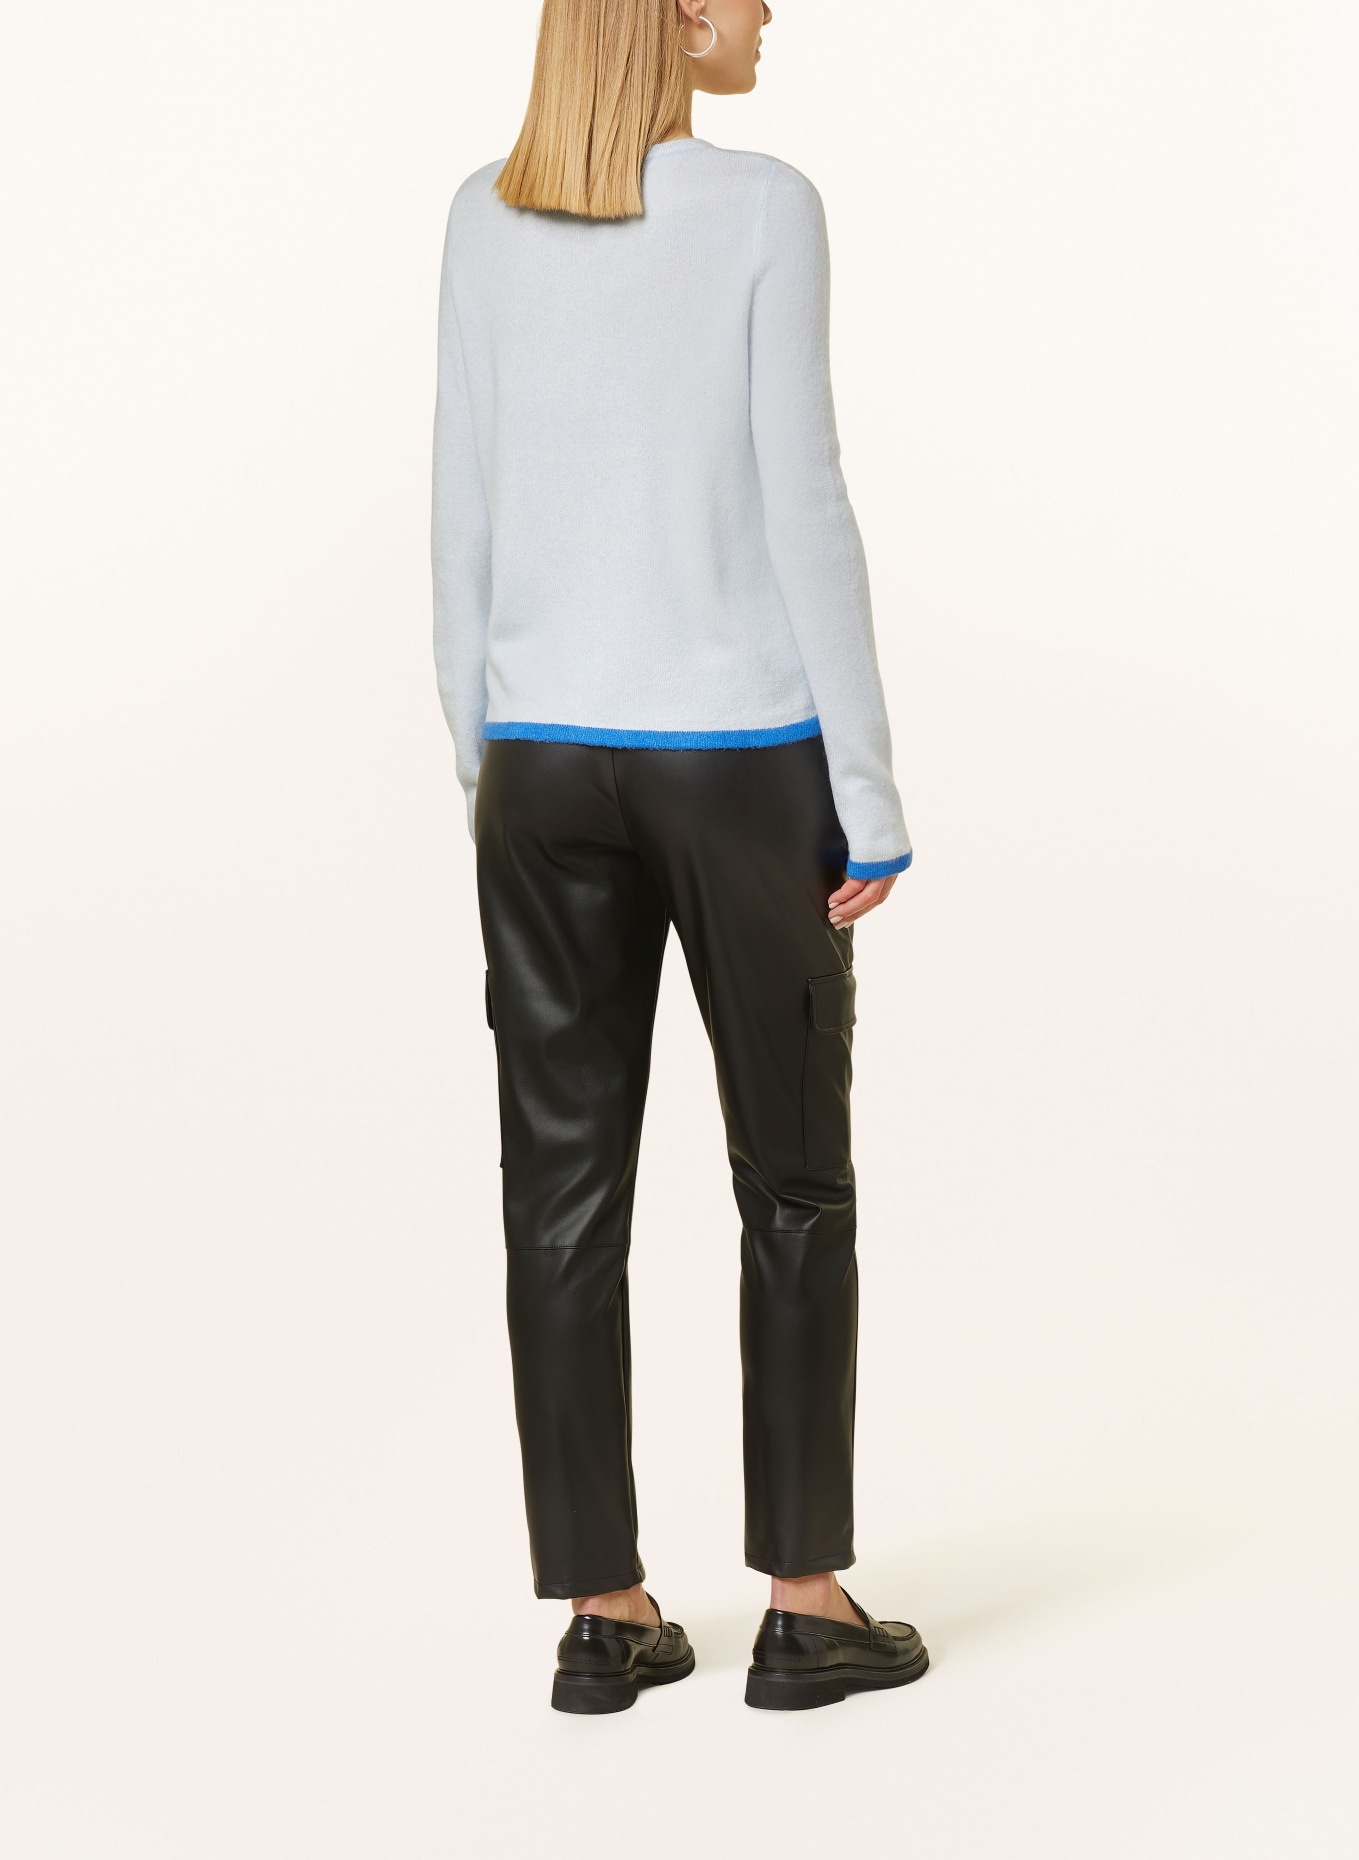 CARTOON Sweater, Color: LIGHT BLUE (Image 3)